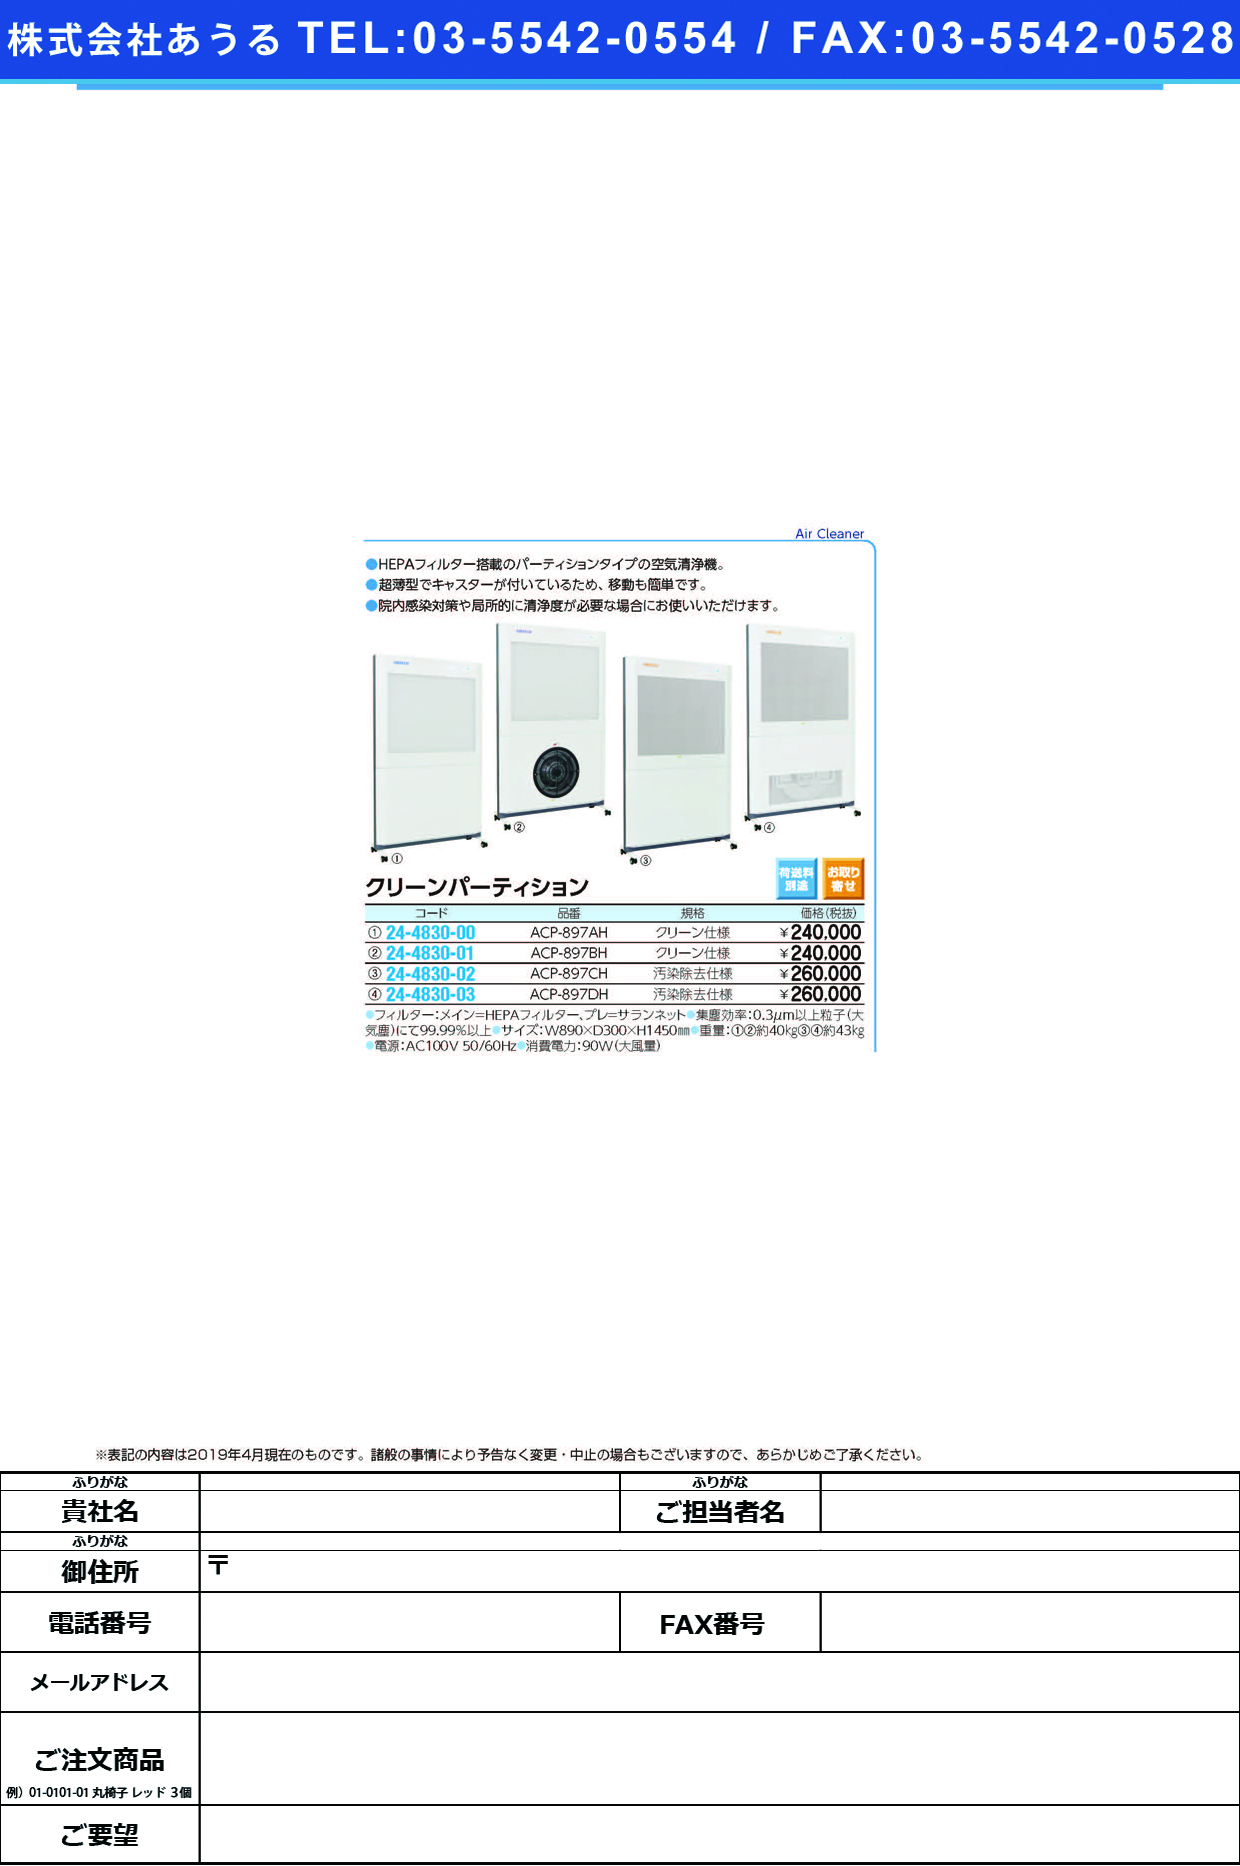 (24-4830-02)クリーンパーティションＣ型 ACP-897CH ｸﾘｰﾝﾊﾟﾃｰｼｮﾝC【1台単位】【2019年カタログ商品】